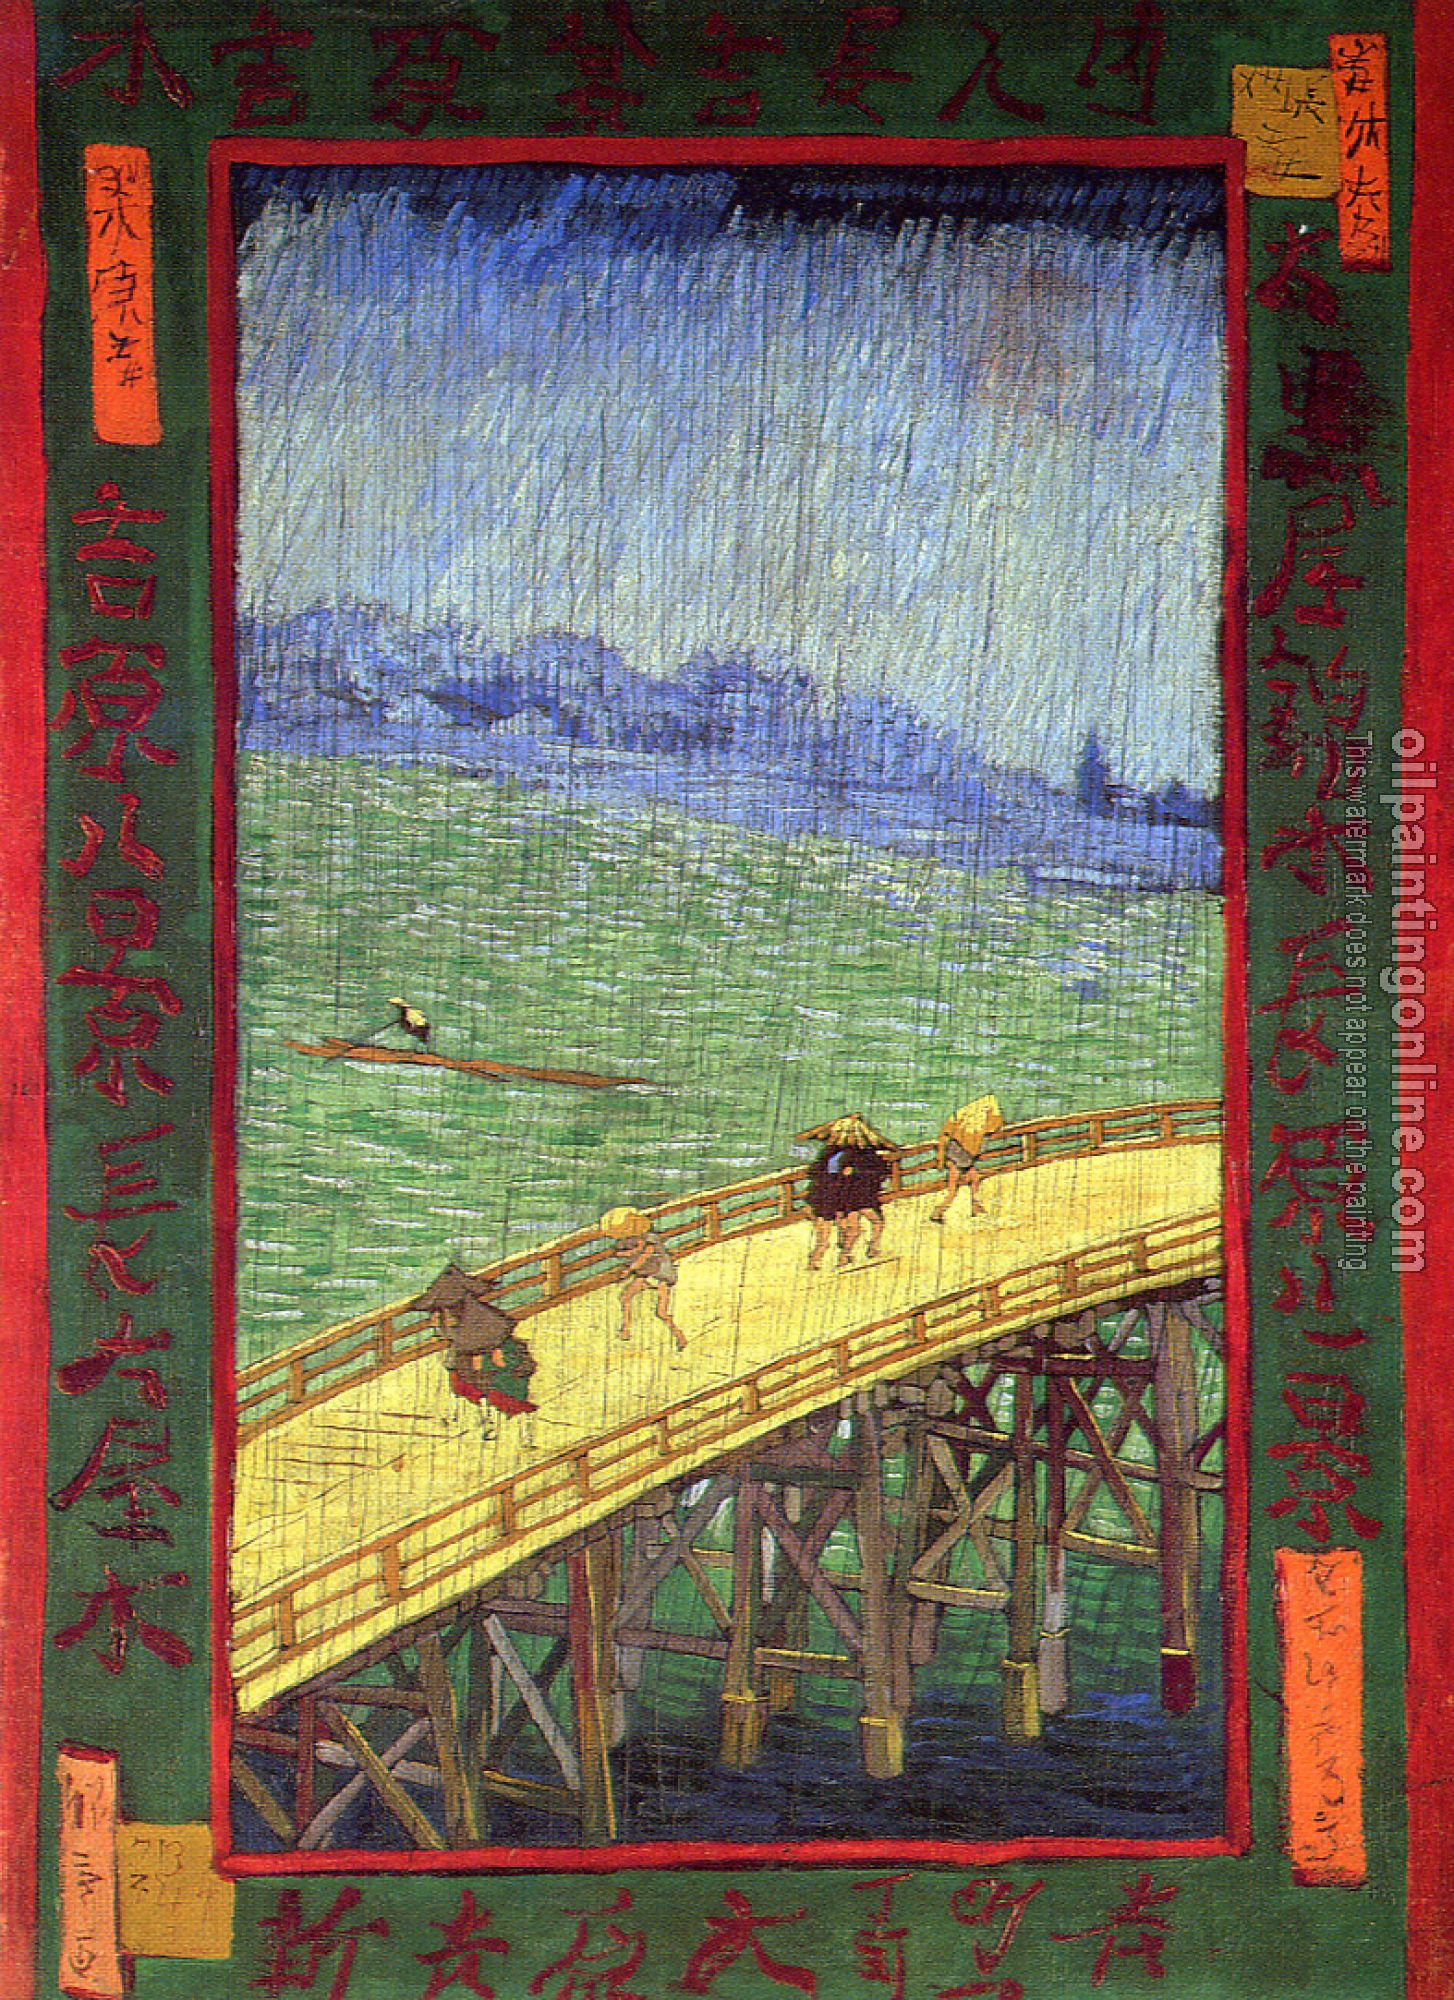 Gogh, Vincent van - Japonaiserie:Bridge in the Rain (after Hiroshige)